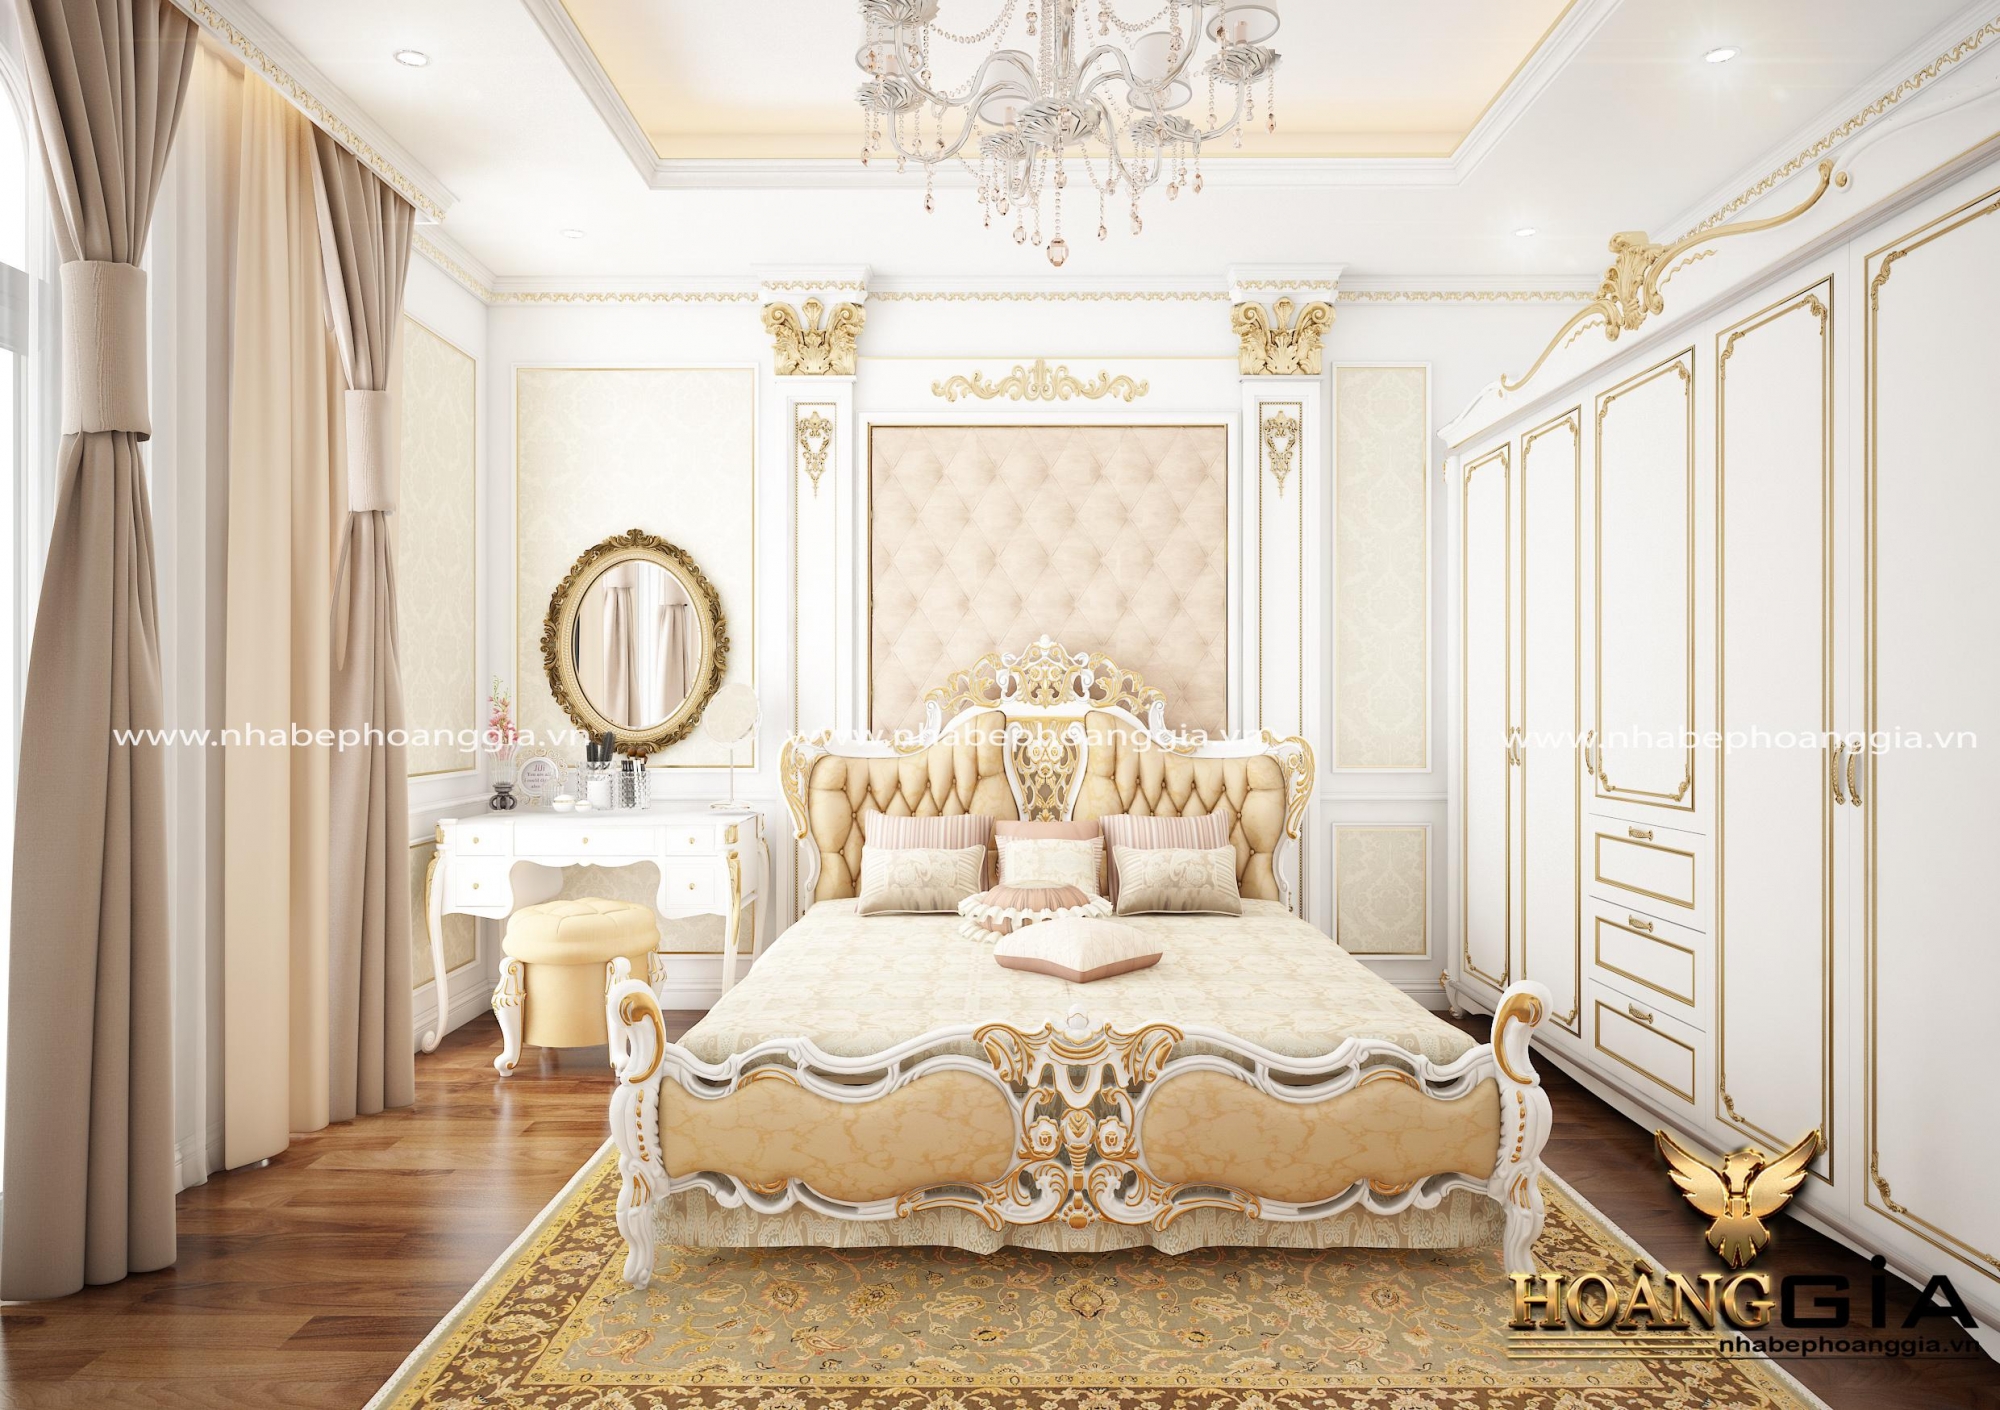 Mẫu giường ngủ gỗ tự nhiên sơn trắng cho nhà biệt thự